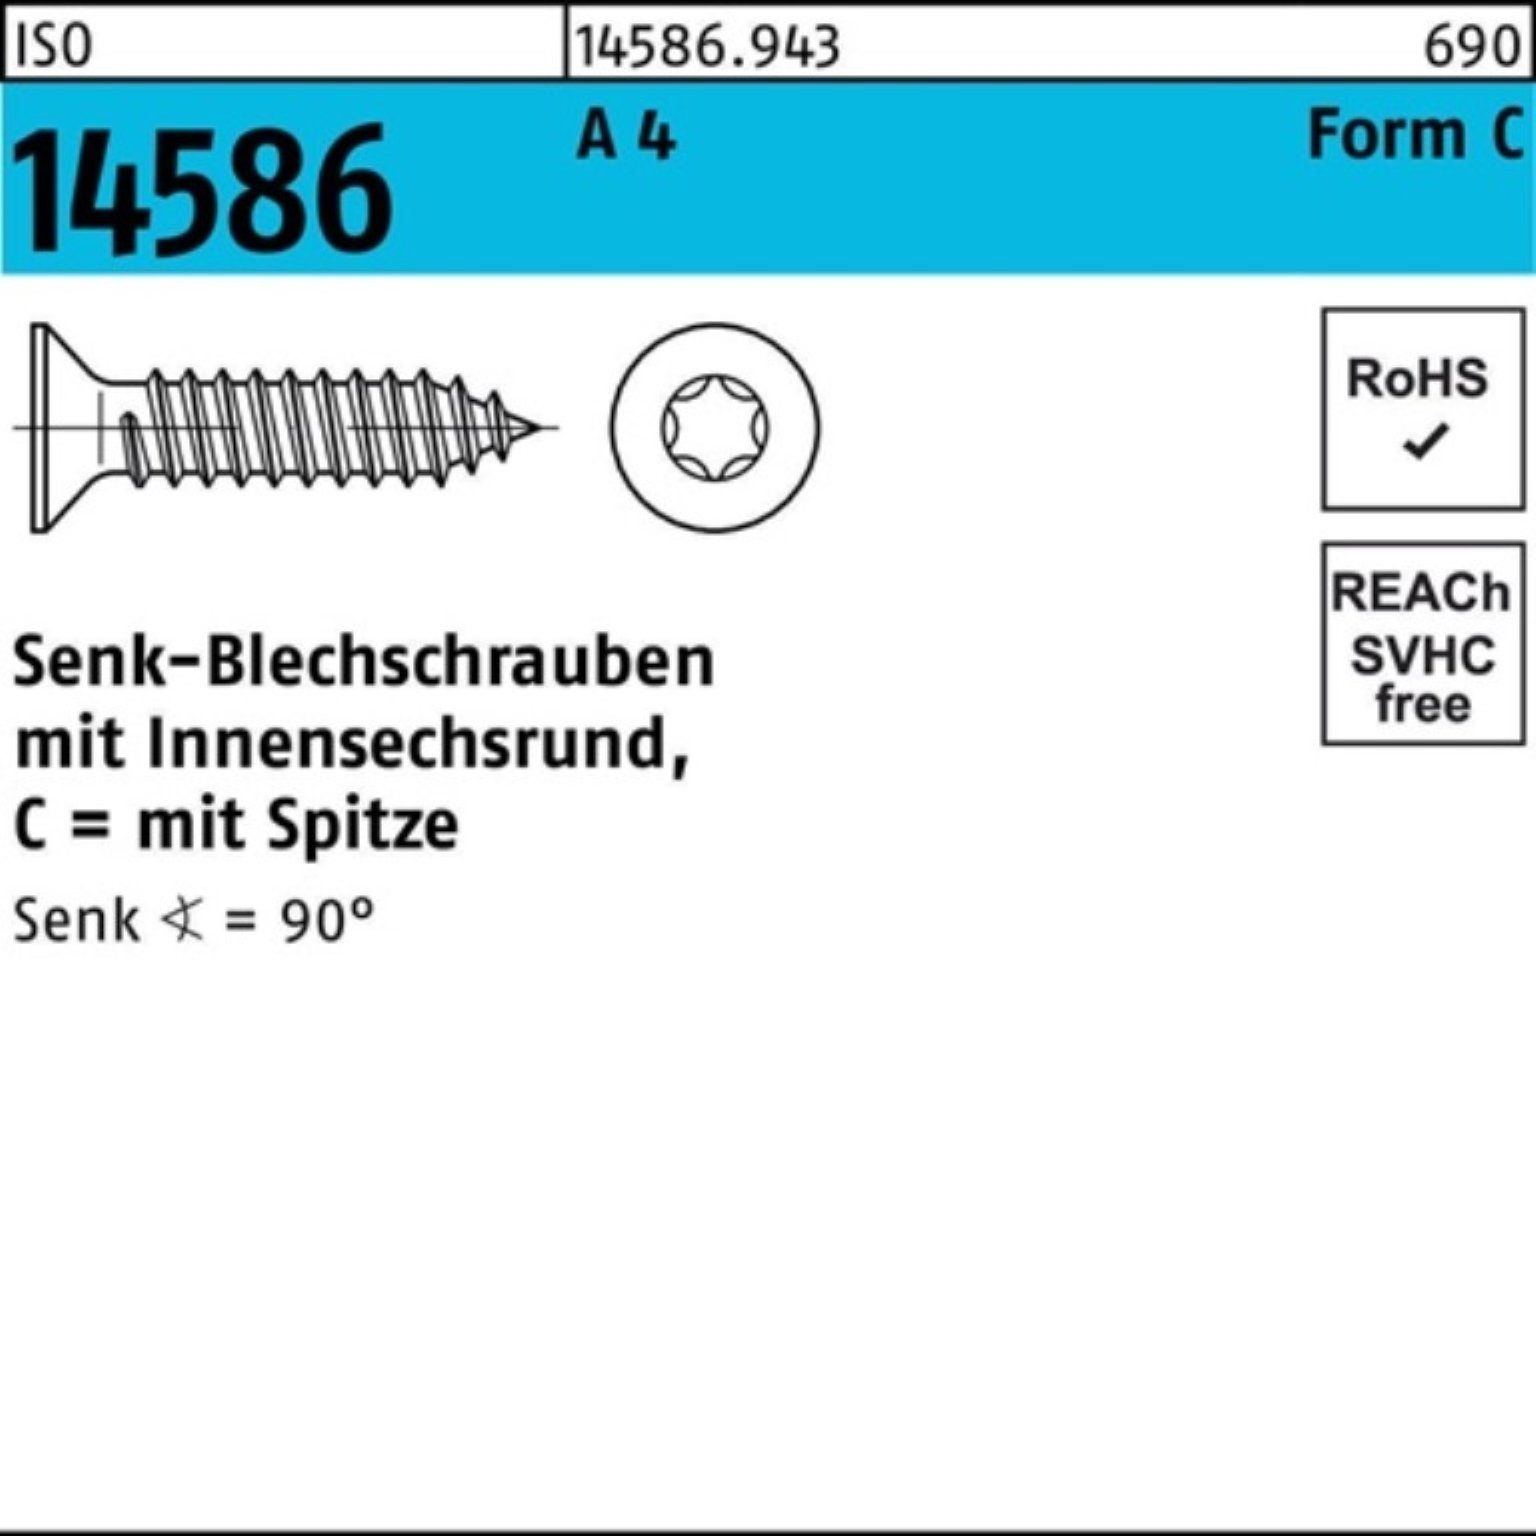 Reyher Schraube 1000er Pack Senkblechschraube ISO 14586 ISR/Spitze 4,2x 9,5-T20 A 4 10